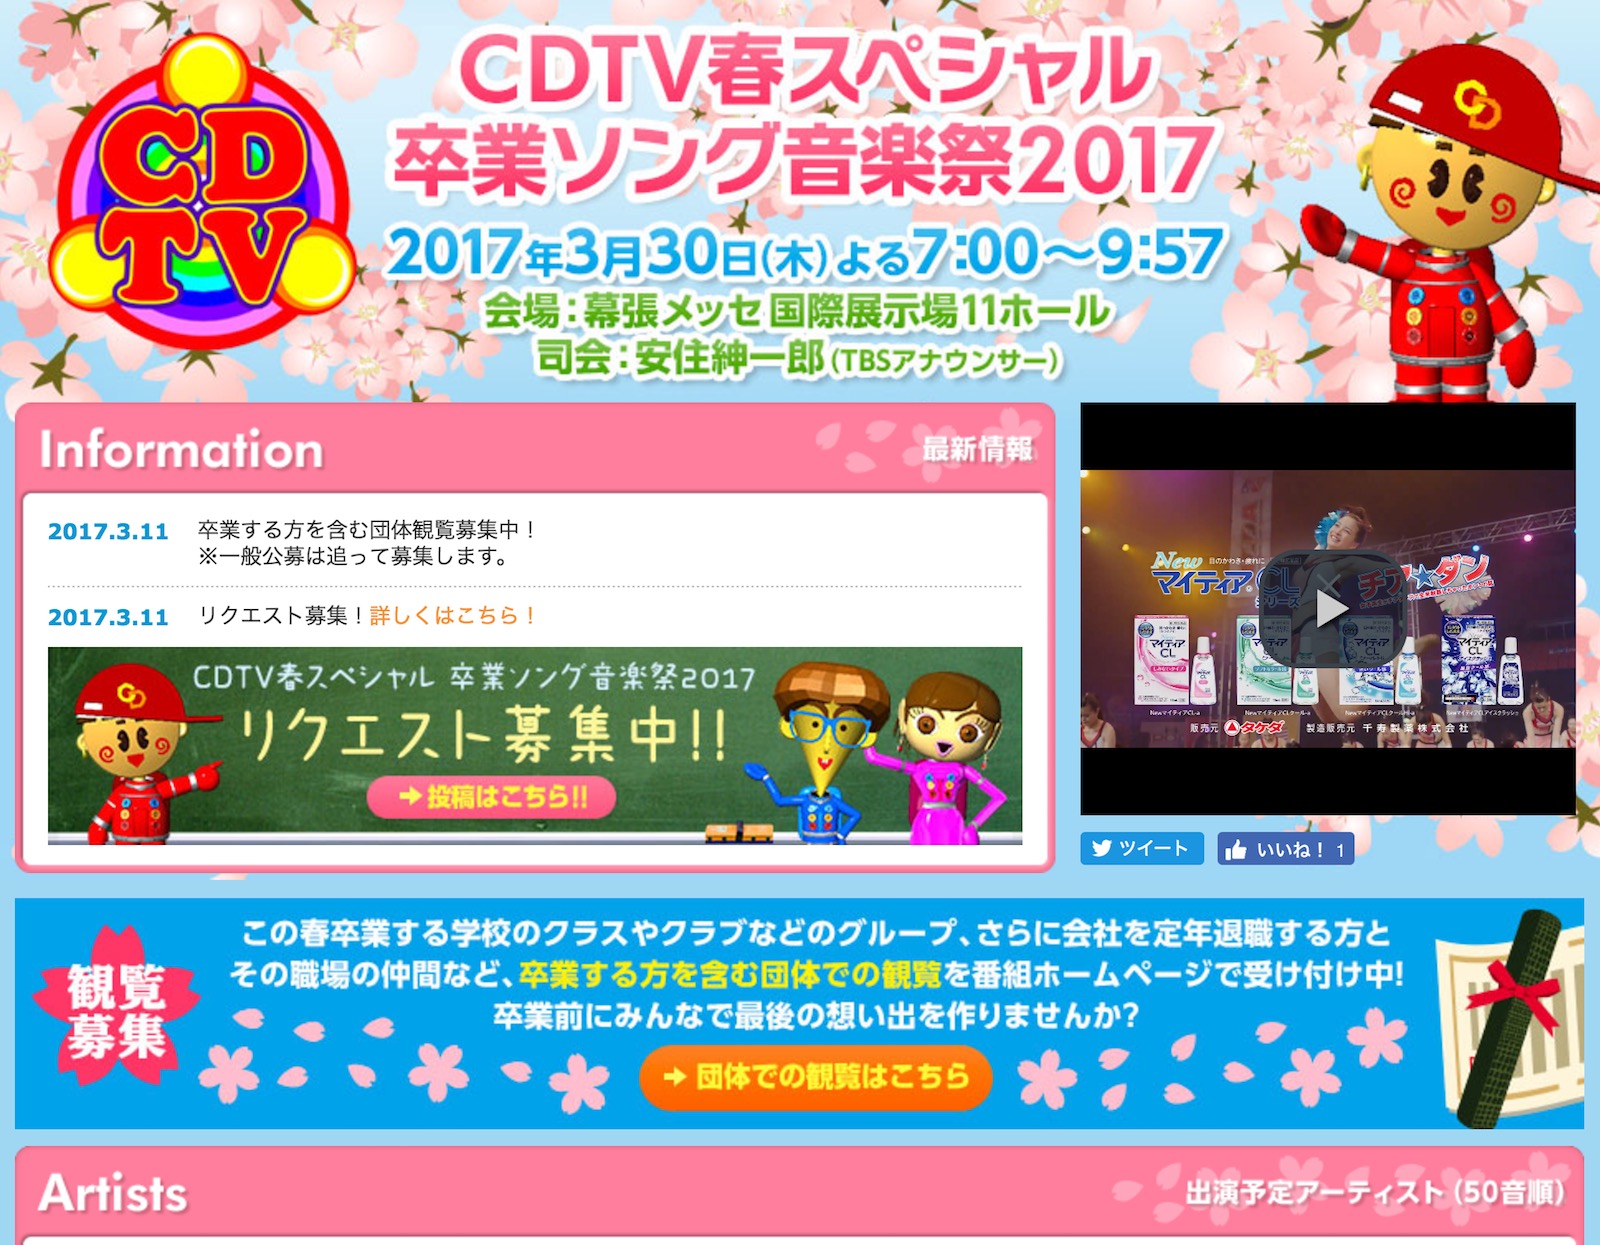 乃木坂46が「CDTV春スペシャル 卒業ソング音楽祭2017」に出演決定